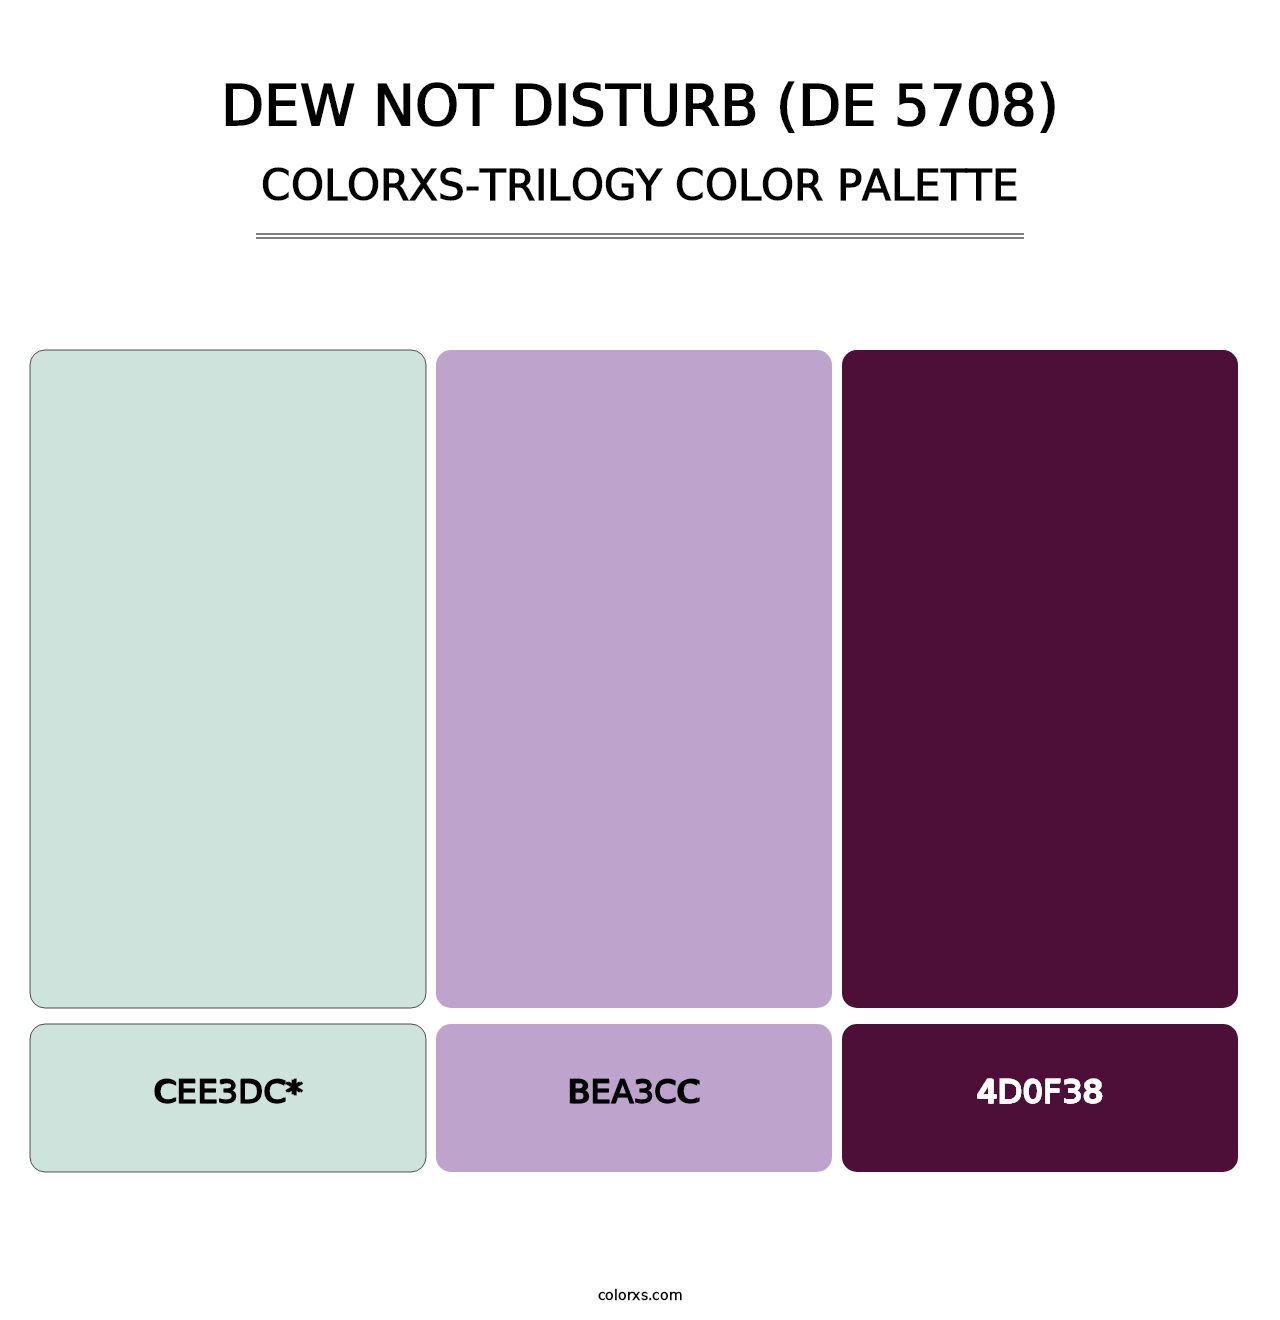 Dew Not Disturb (DE 5708) - Colorxs Trilogy Palette